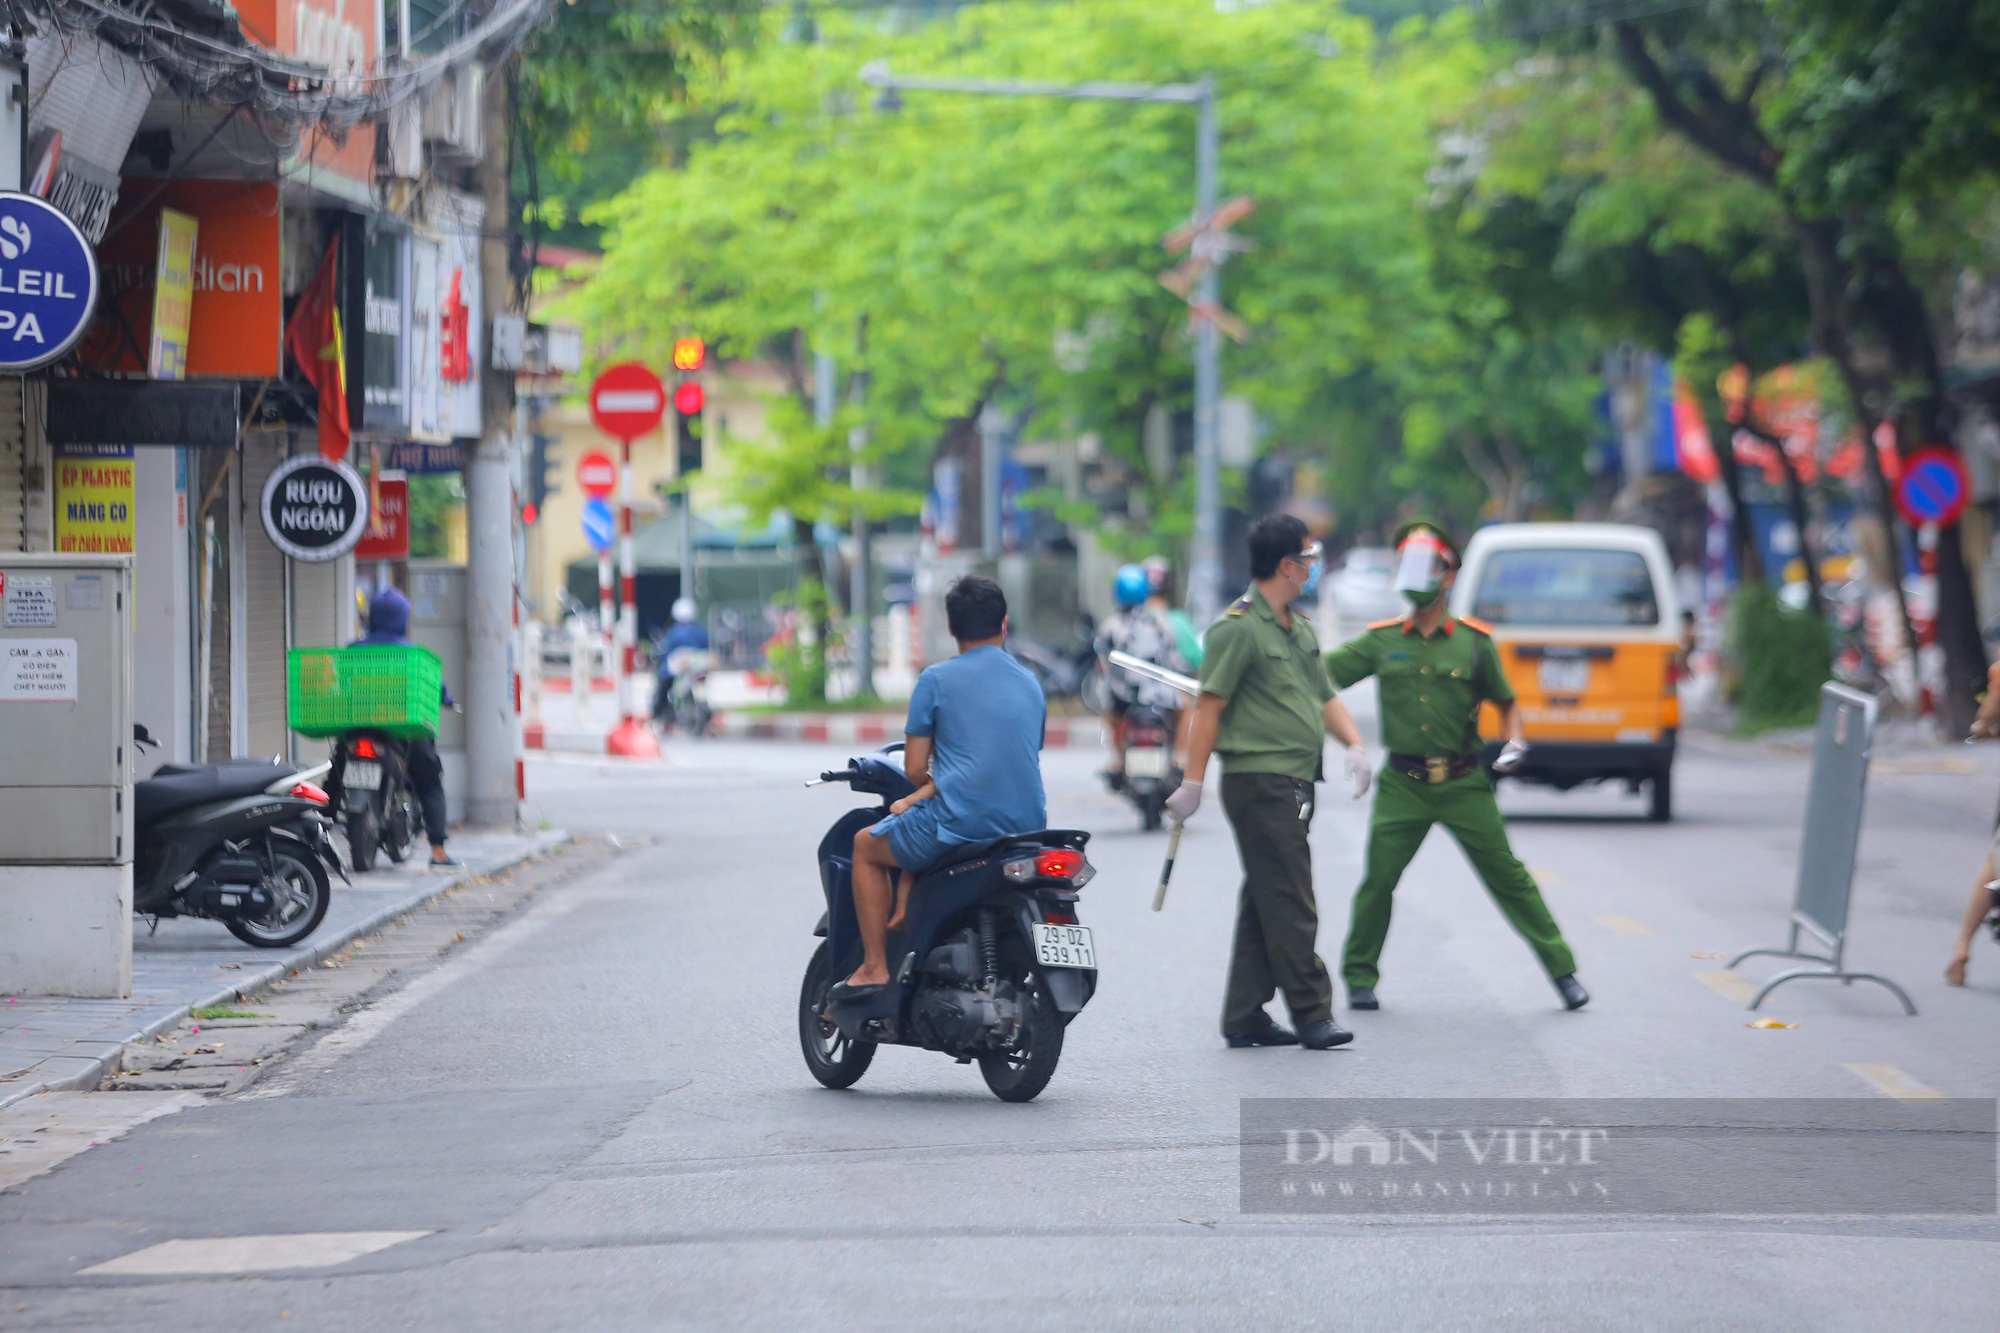 Không đeo khẩu trang, quay đầu xe bỏ chạy khi thấy chốt kiểm soát người đi đường ở Hà Nội - Ảnh 7.